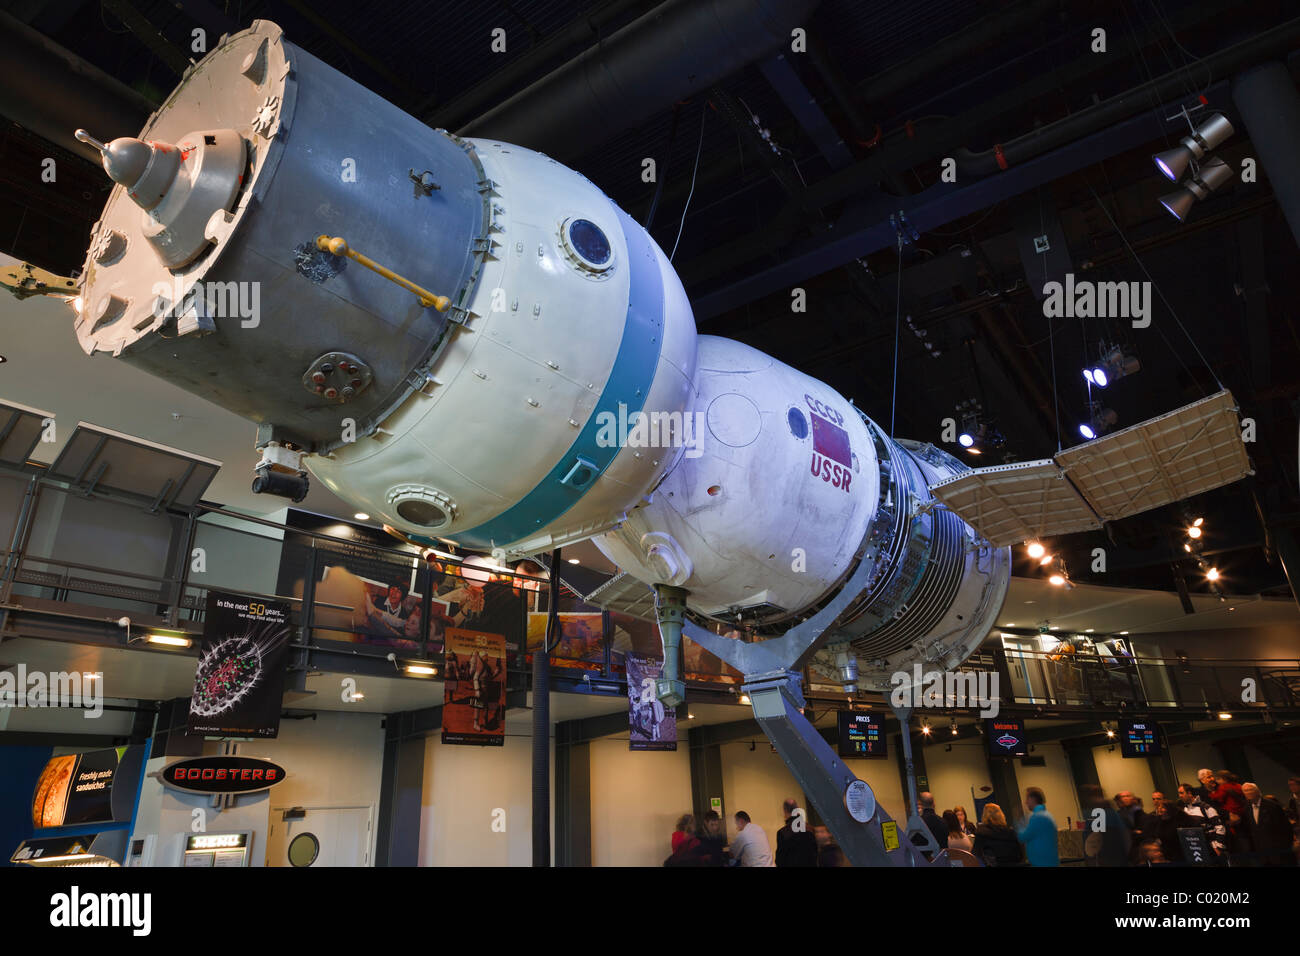 Russo navicella spaziale Soyuz in mostra presso il Centro Spaziale Nazionale, Leicester. Foto Stock